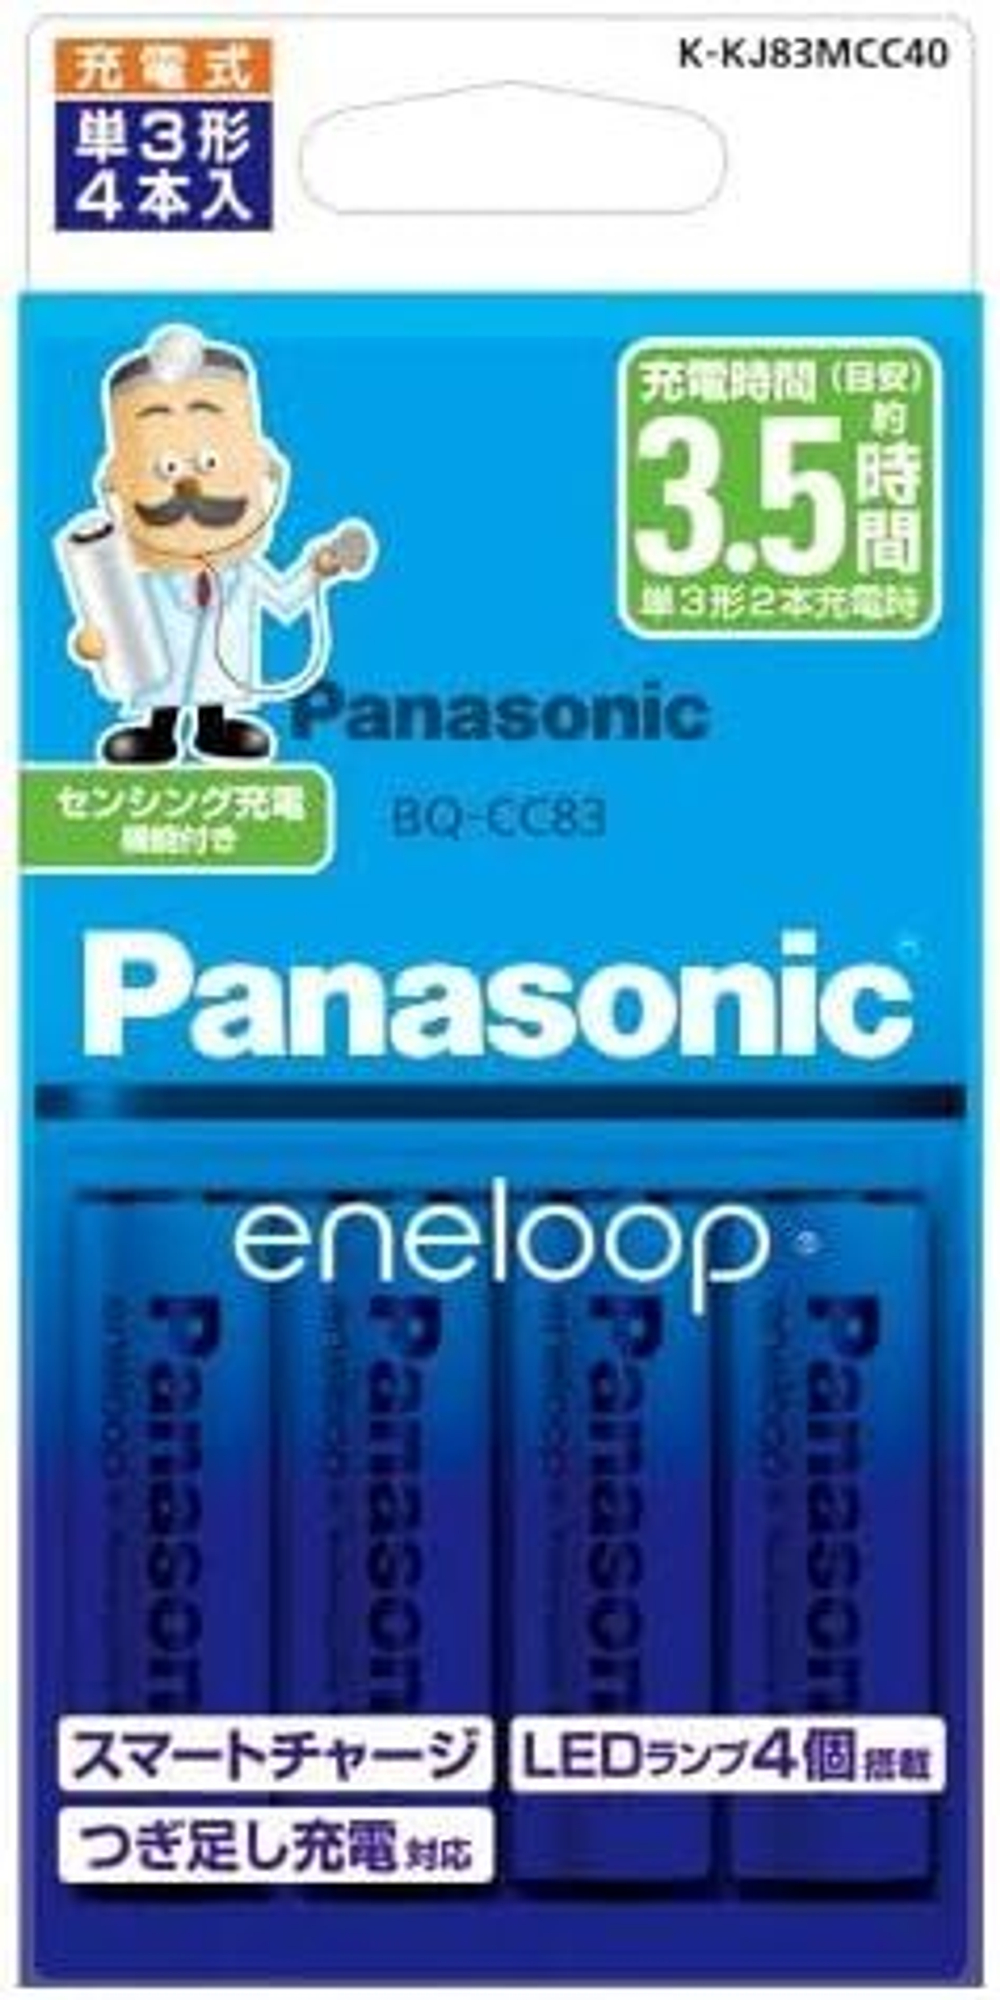 Зарядное устройство Panasonic Eneloop K-KJ83MCC40